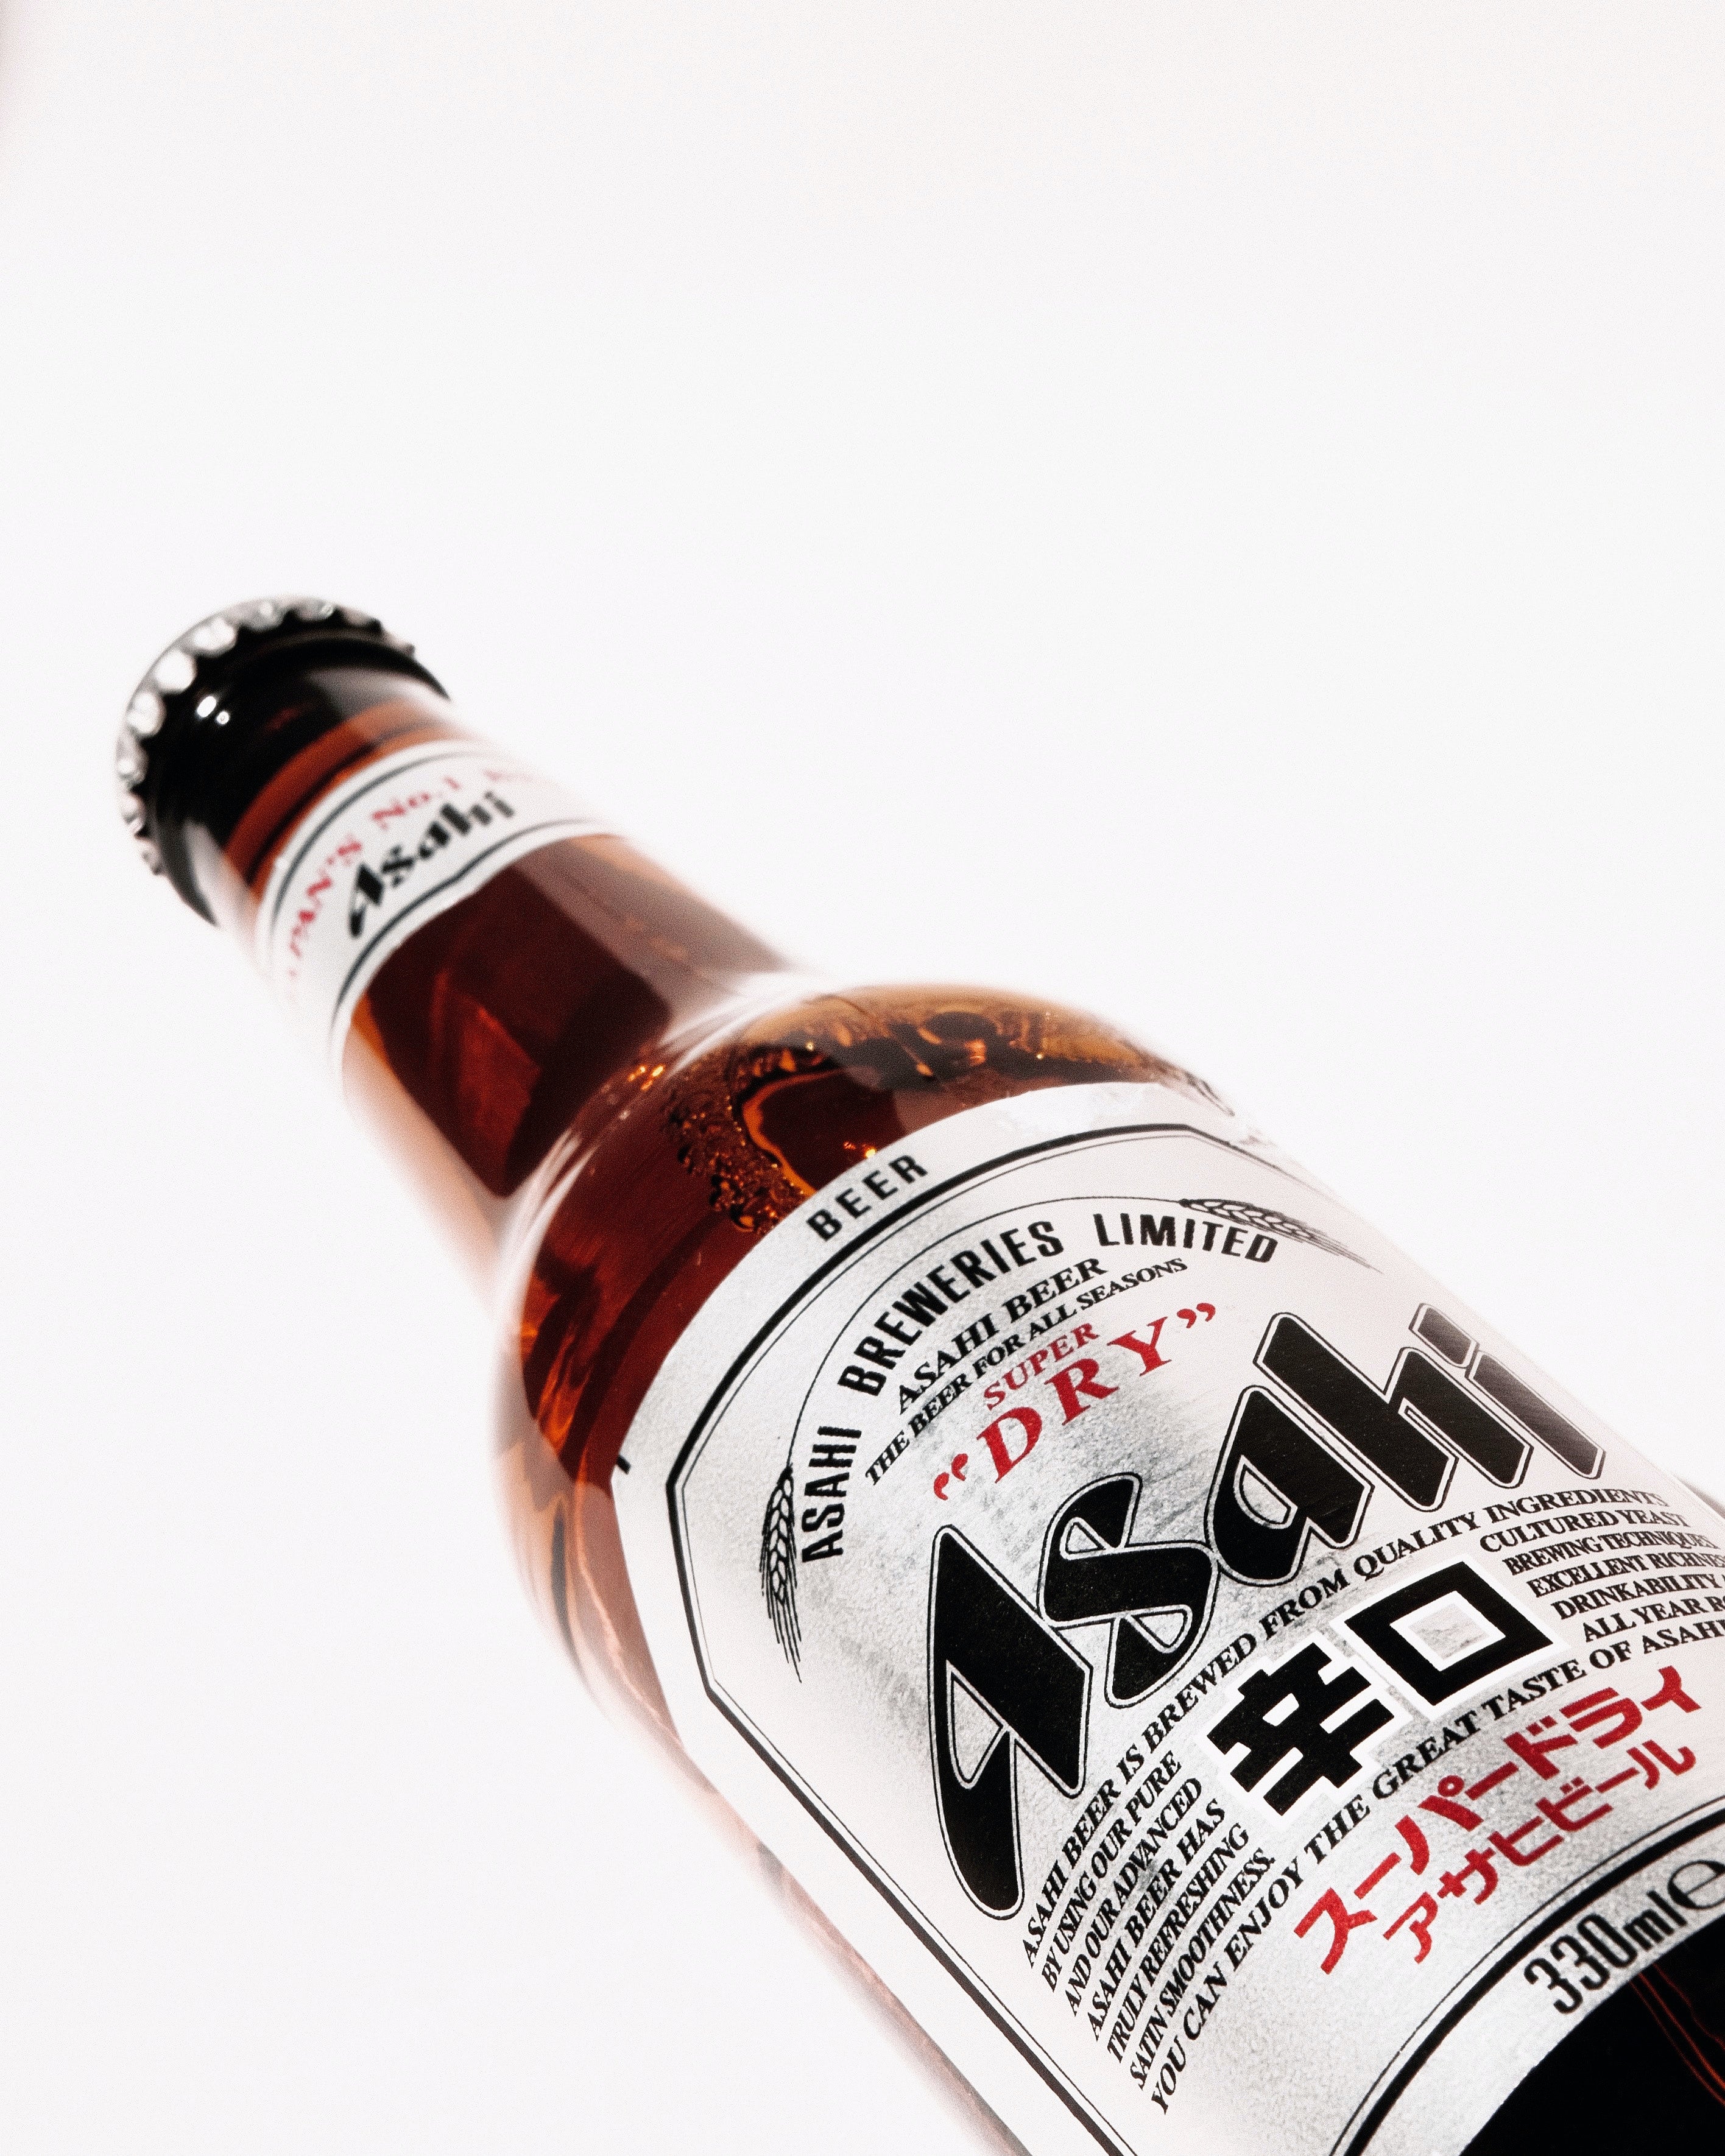 Asahi Dry Beer 0,33l - die Nr. 1 Japan`s mit 5,2% Vol